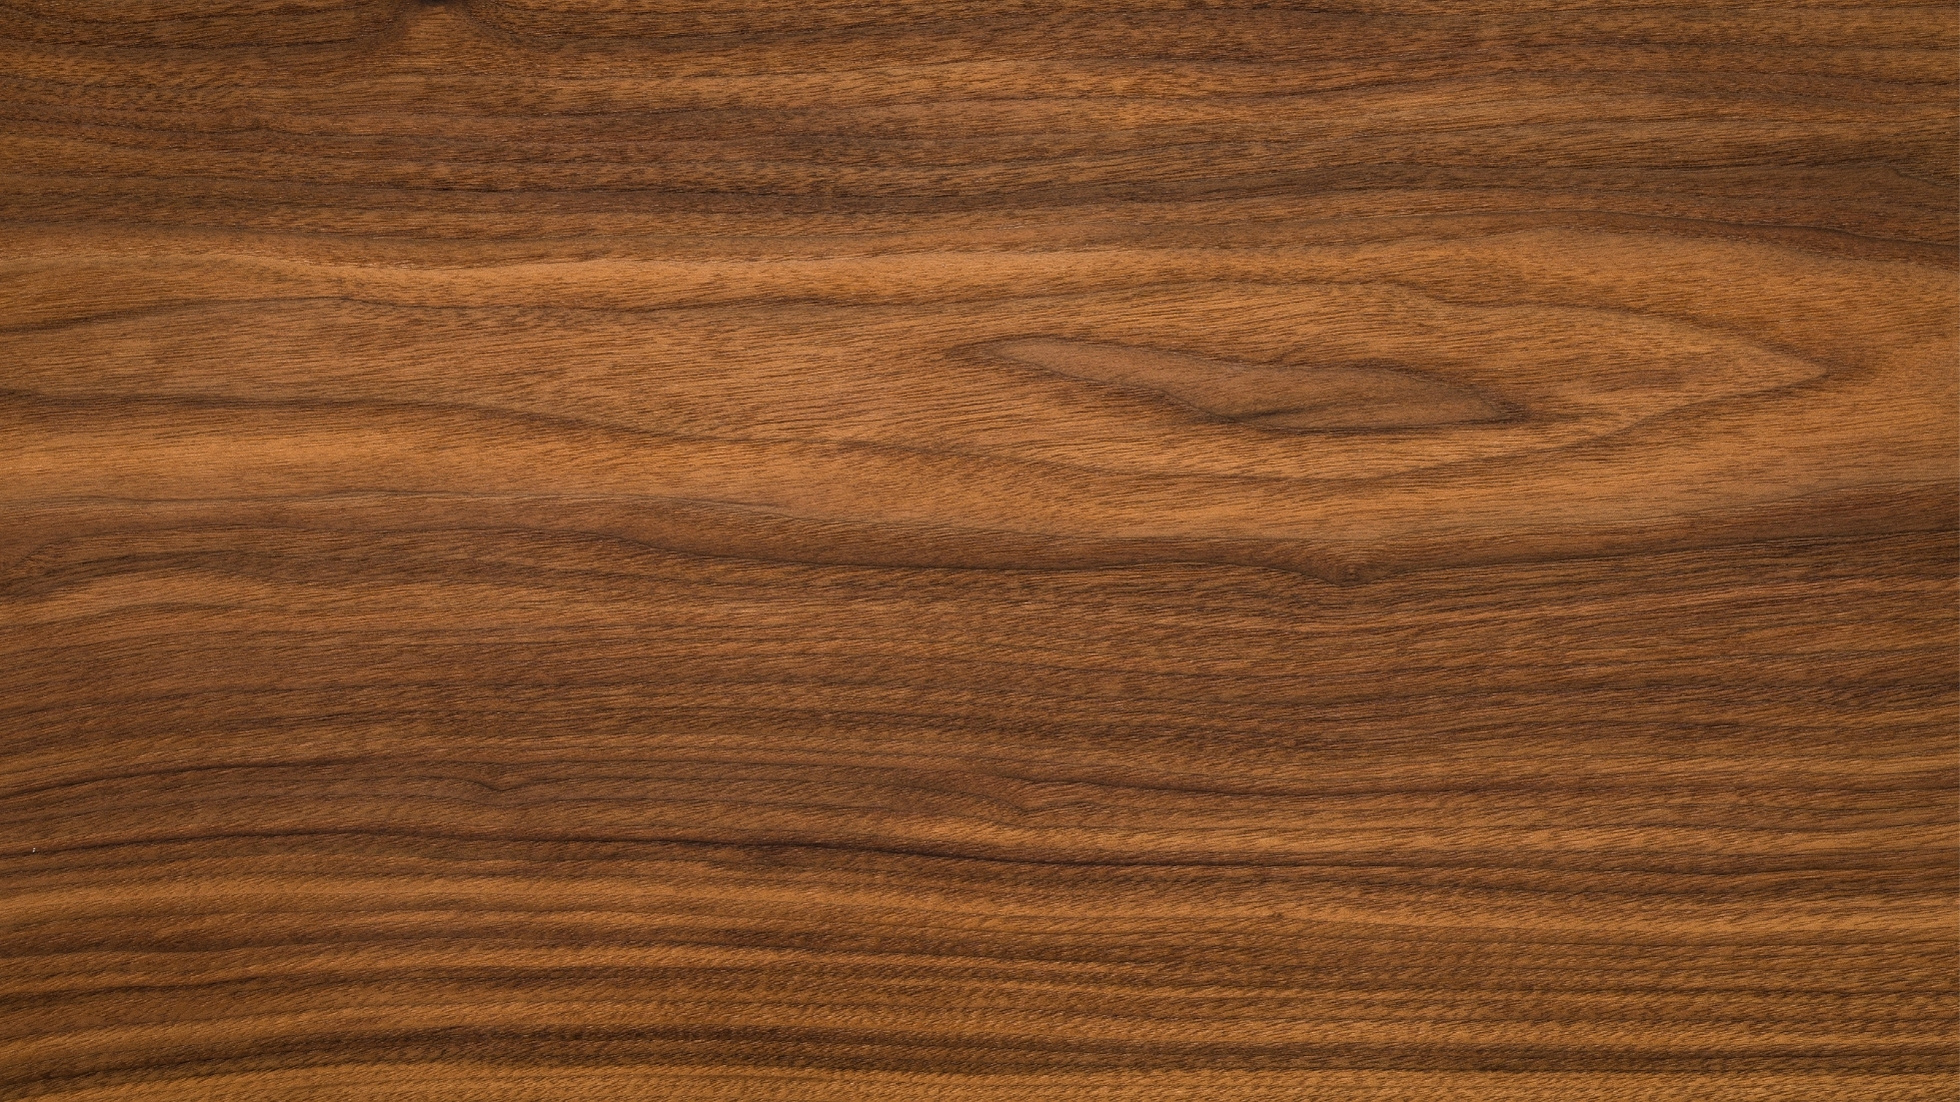 La elegancia duradera: descubriendo la belleza y la distinción de la madera de Nogal